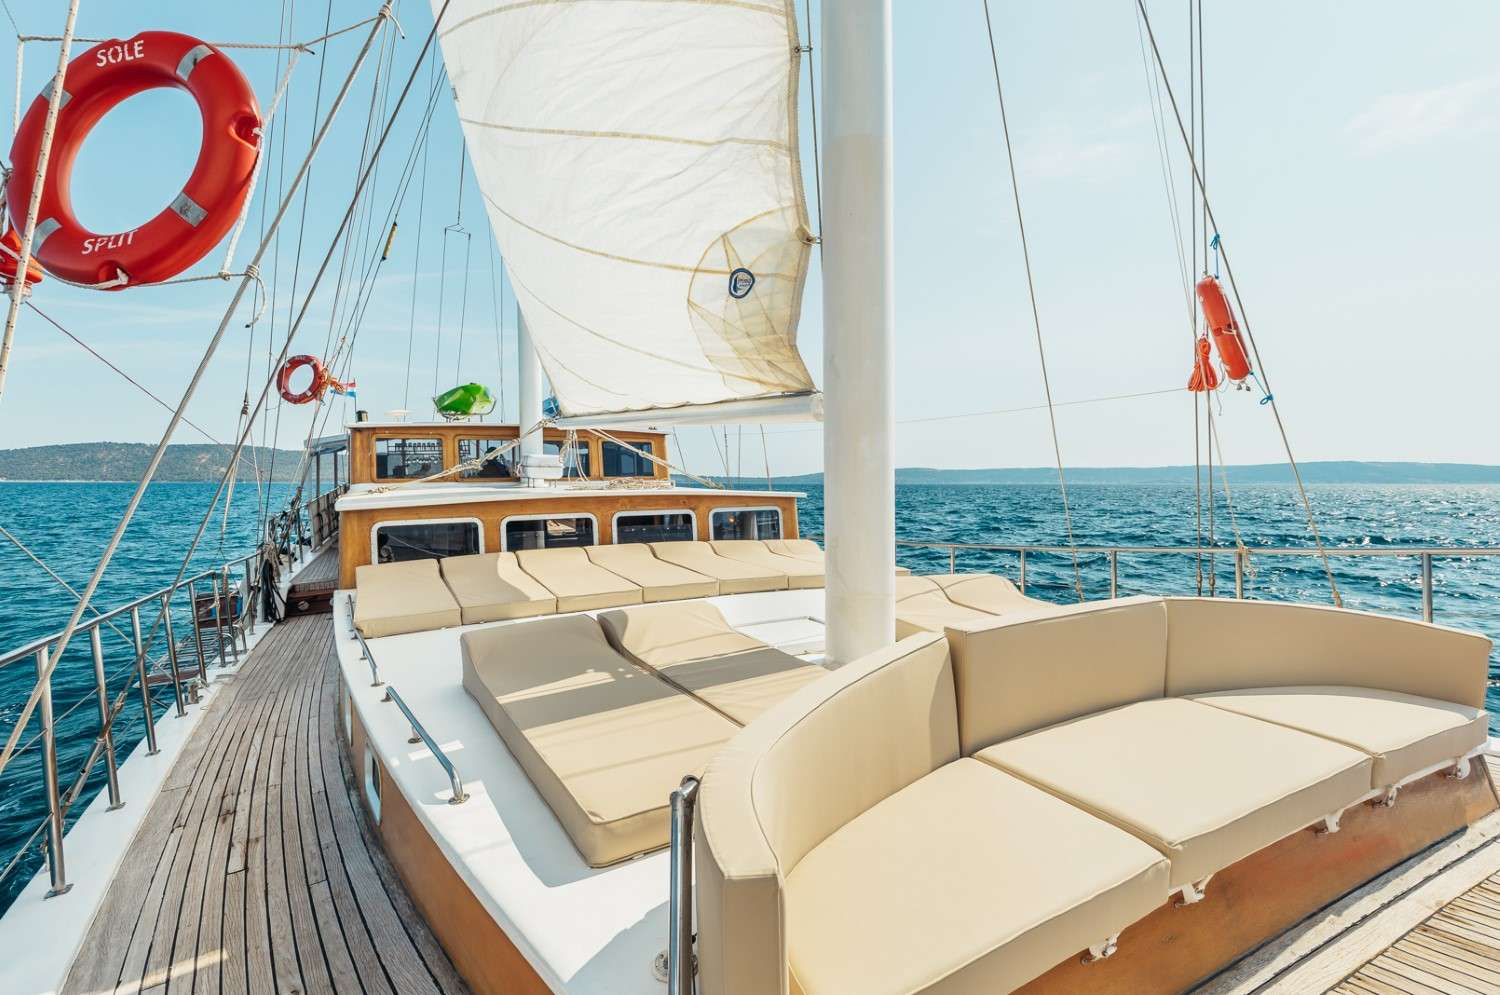 Sole  - Yacht Charter Brbinj & Boat hire in Croatia 5